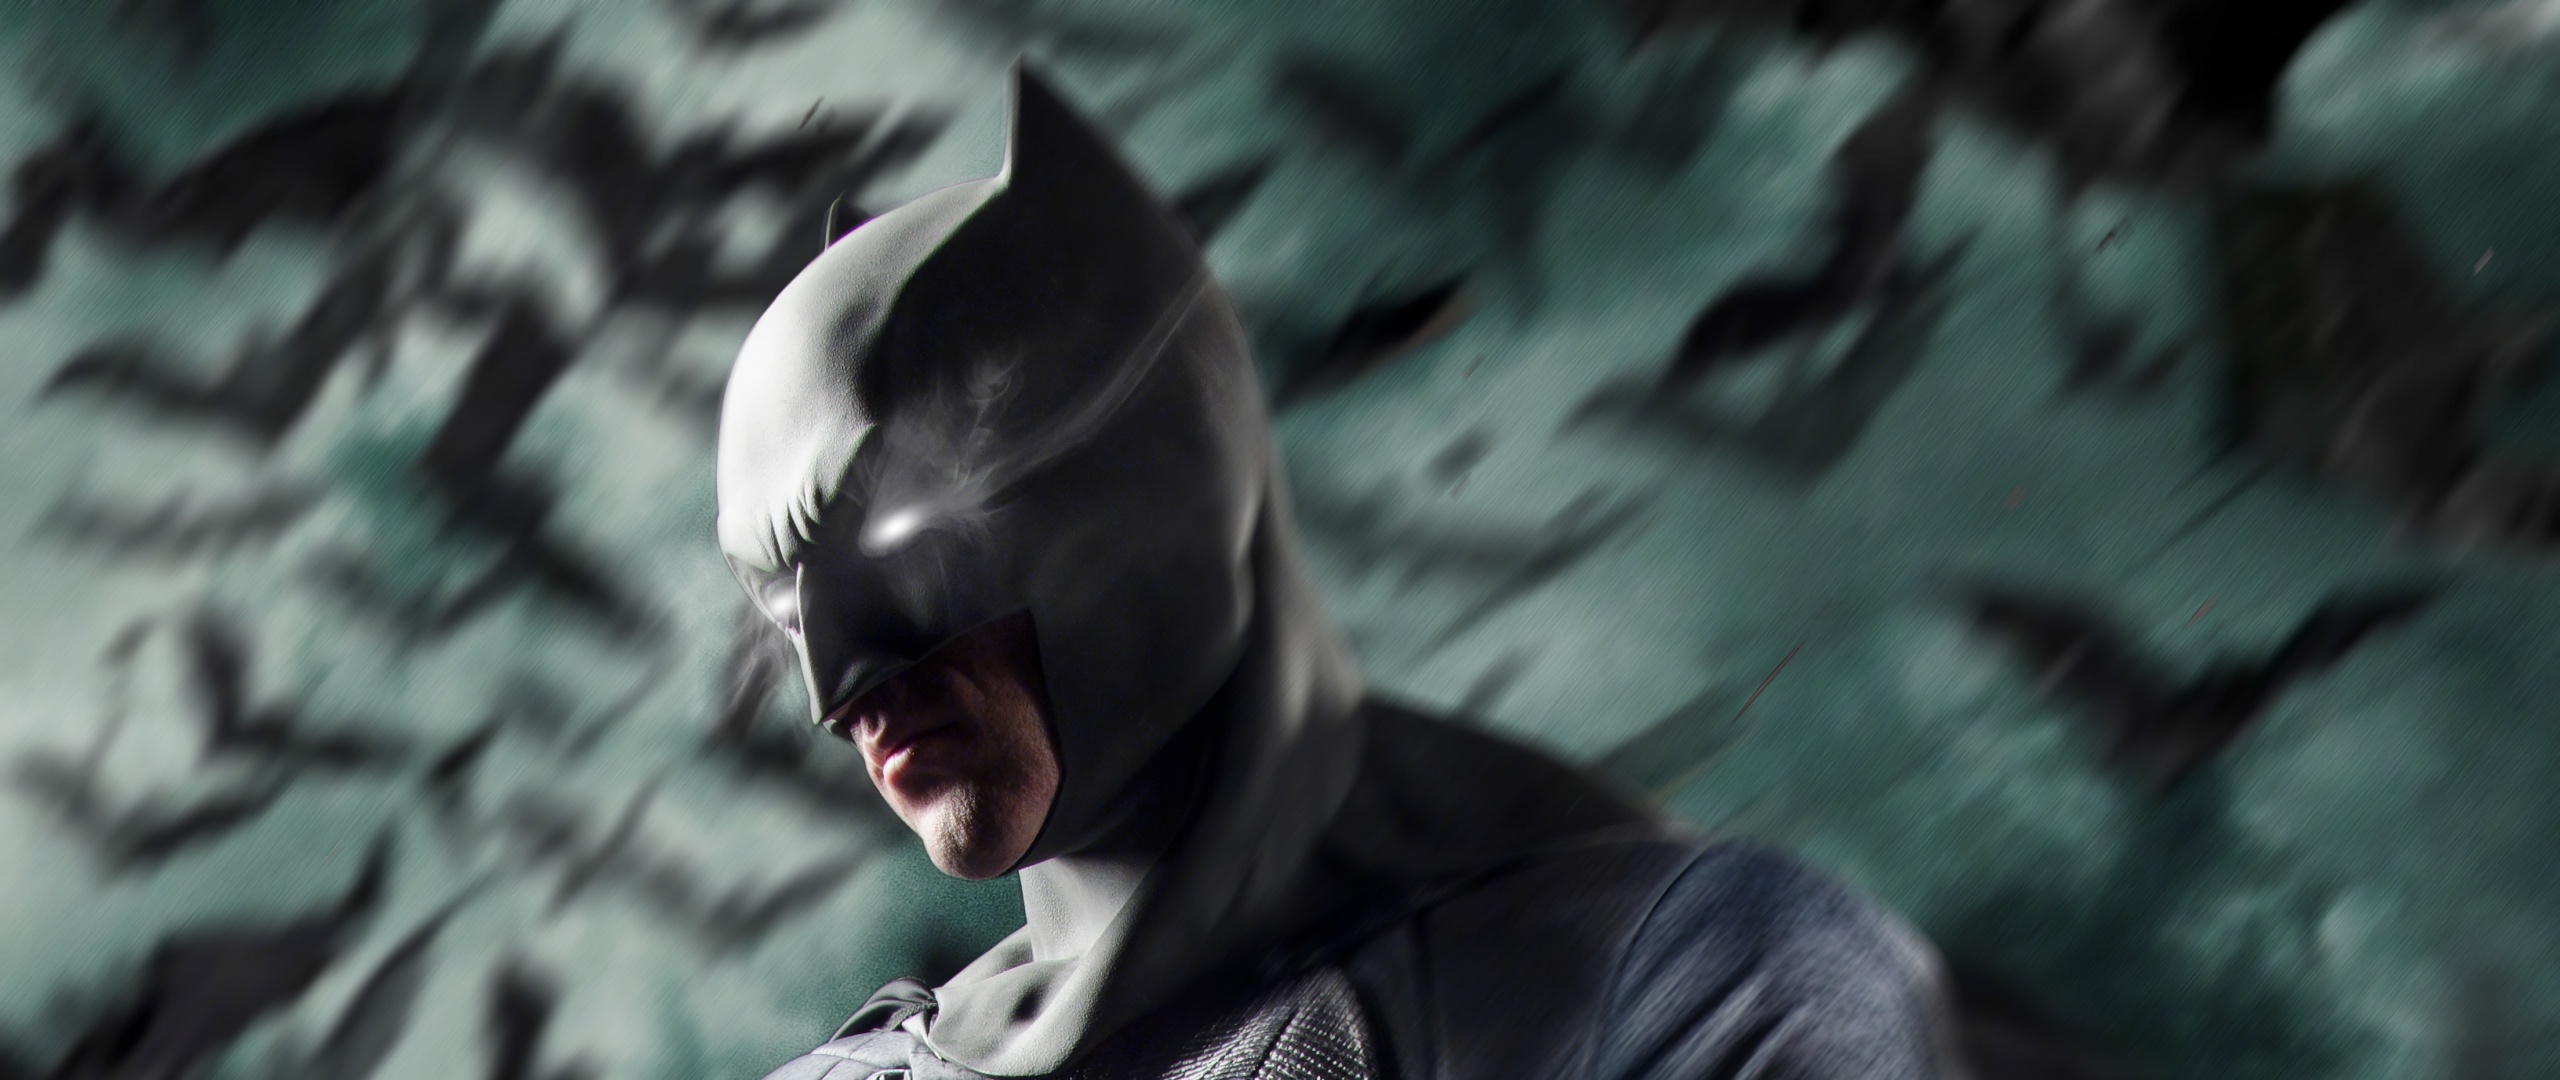 Batman Wallpaper 4K, DC Superheroes, Graphics CGI, #957